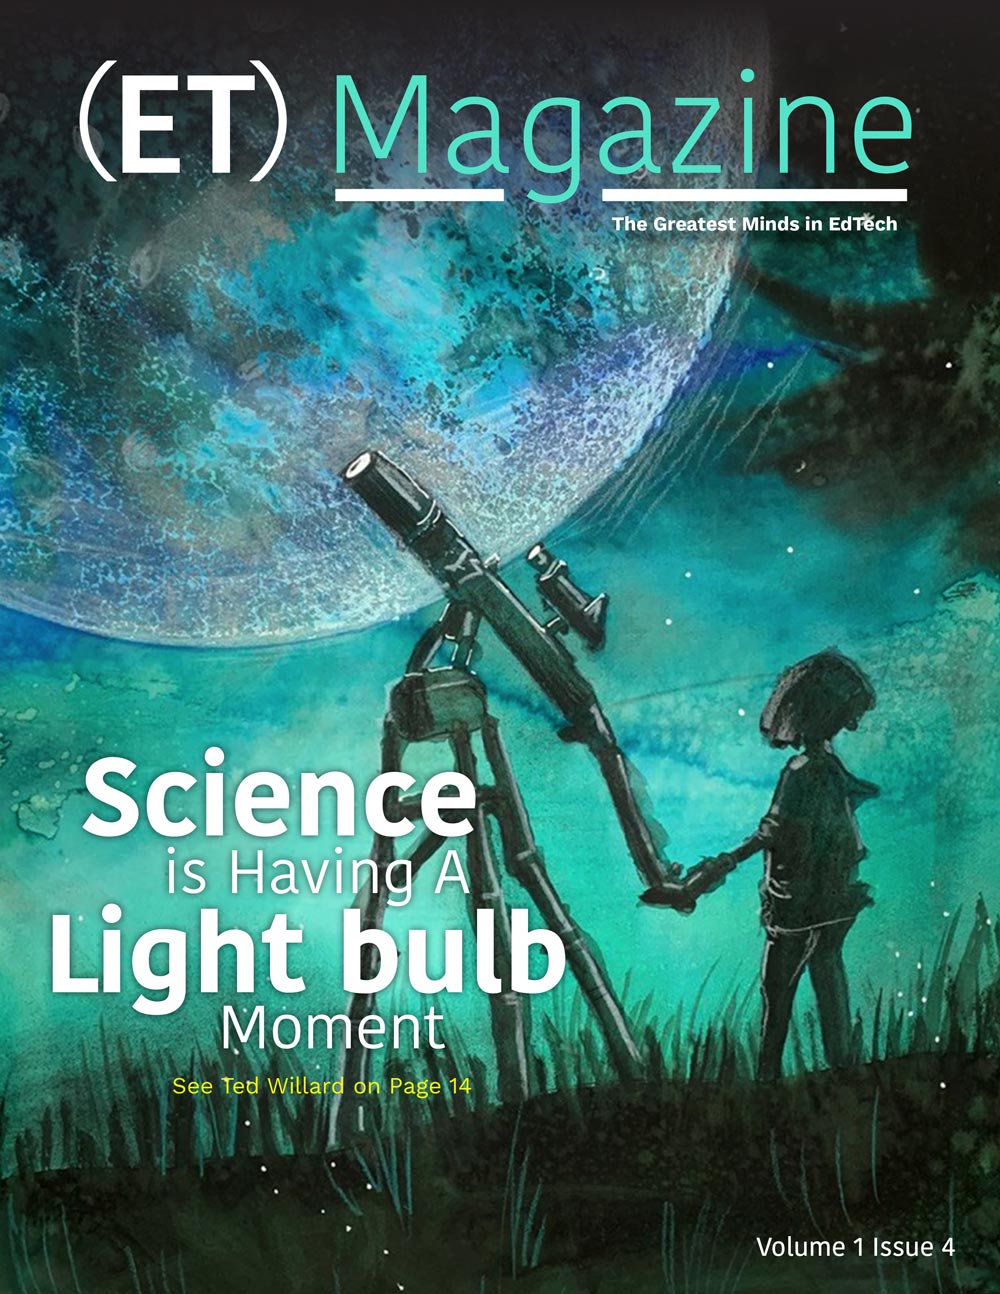 ET Magazine Issue 1 Volume 4 cover